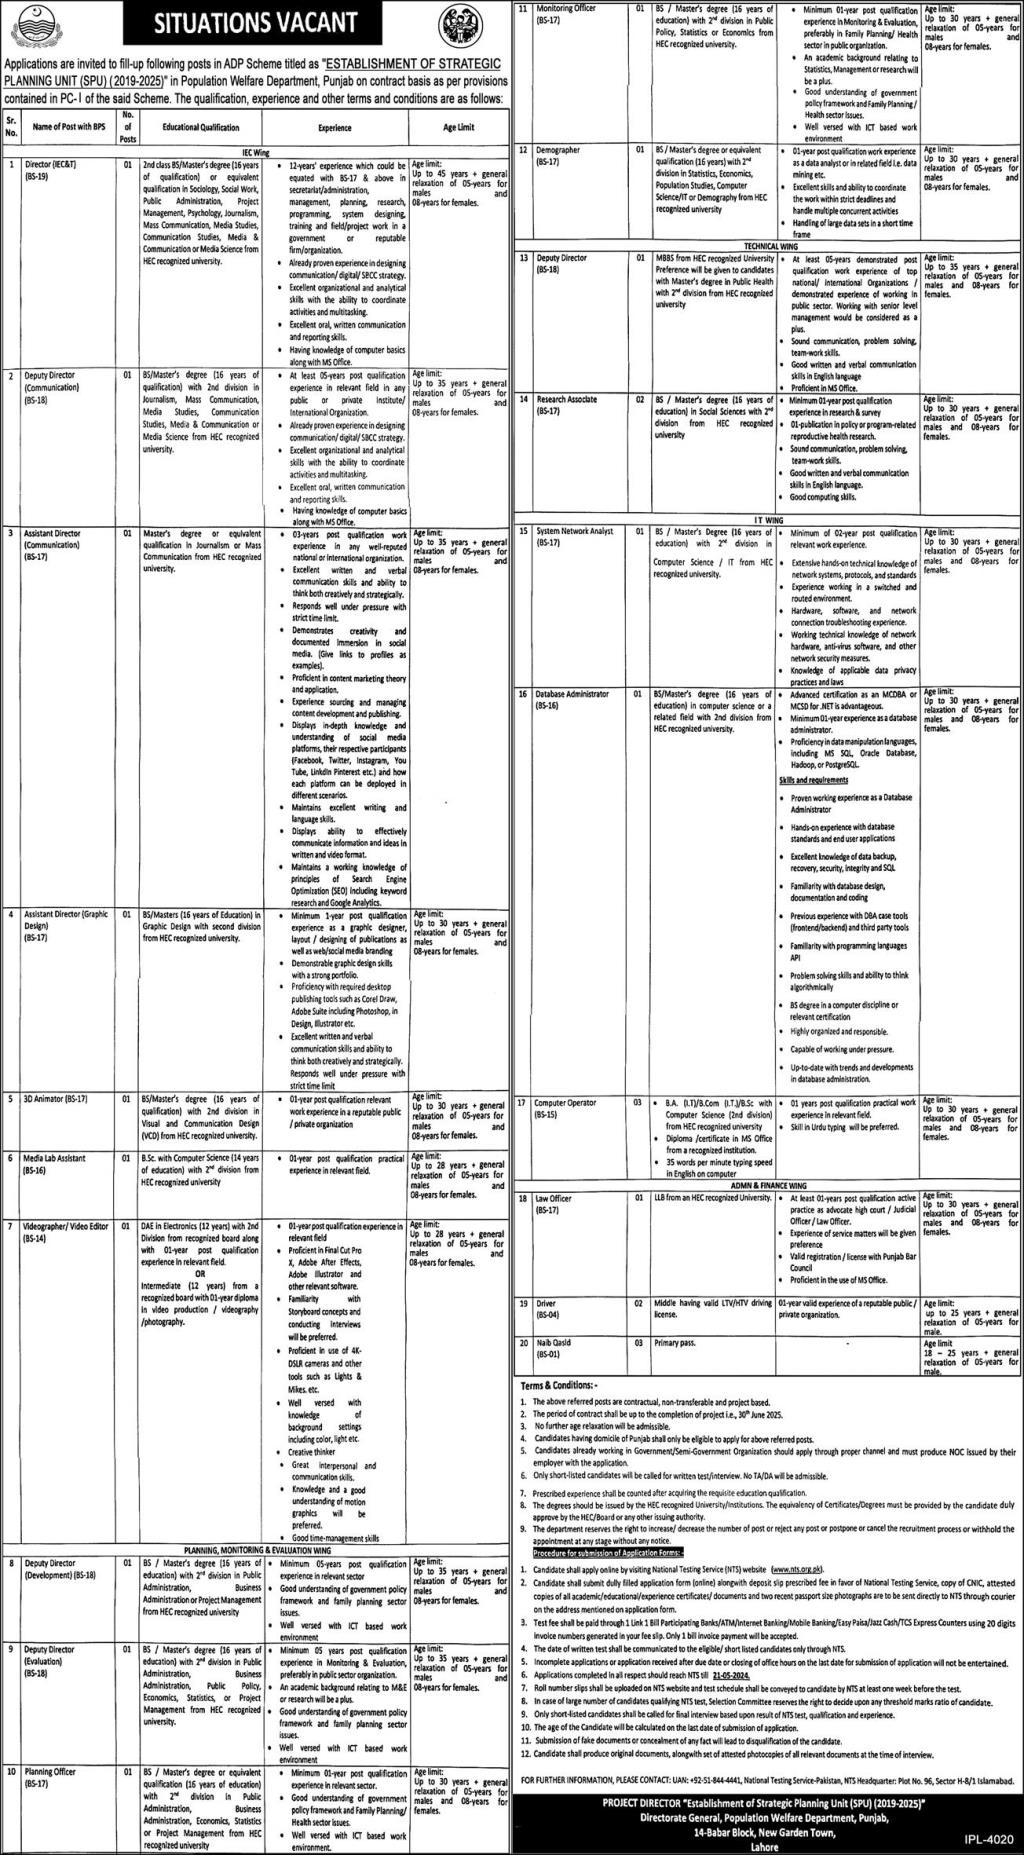 Contractual Vacancies in Population Welfare Department Punjab